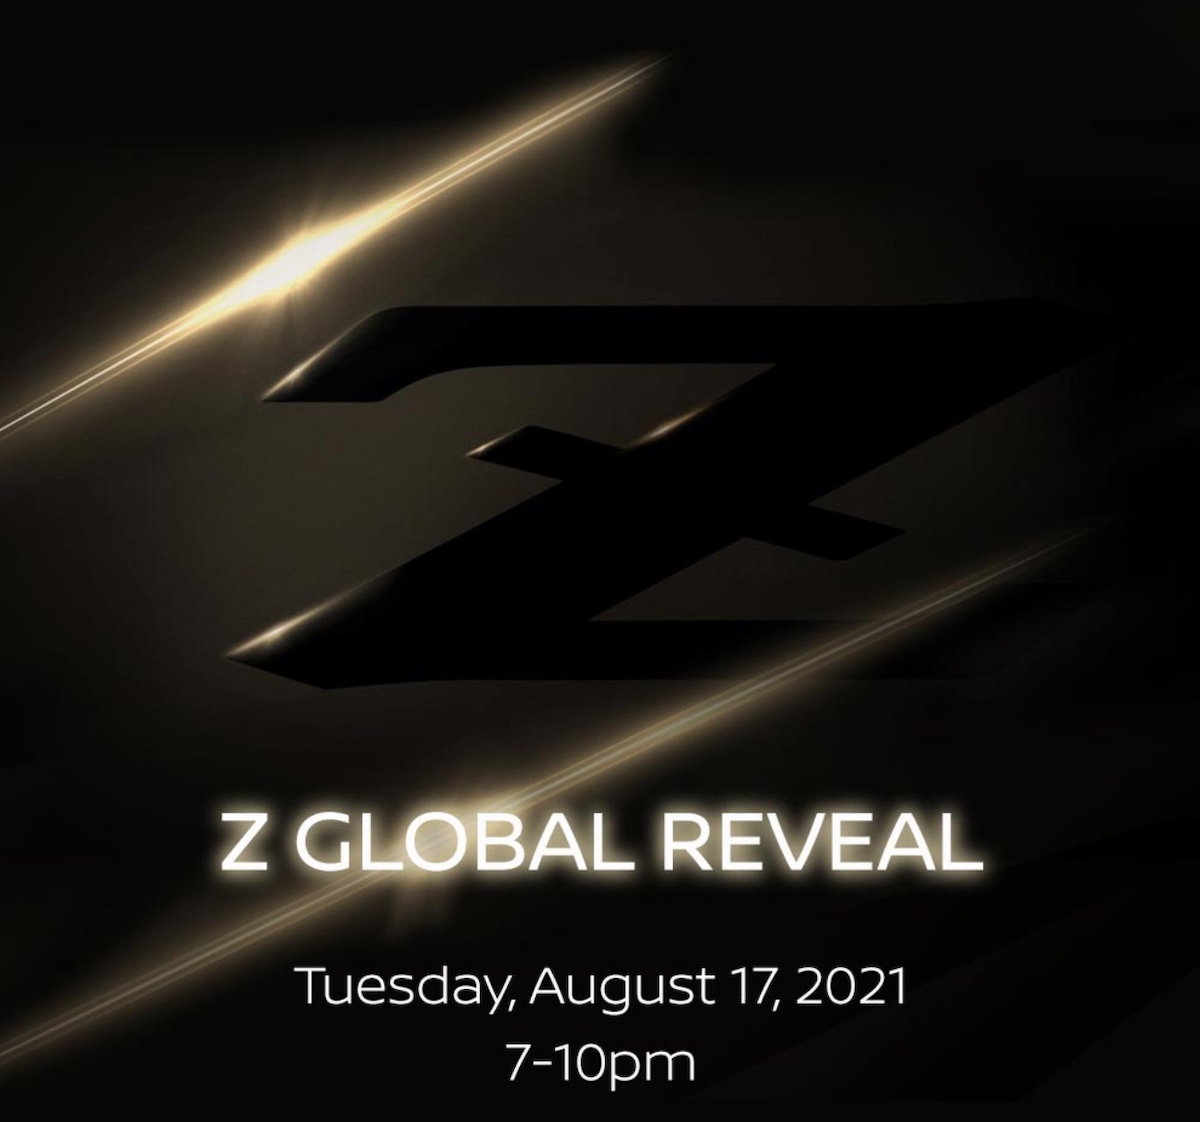 2022-nissan-z-global-reveal-invite-jpeg.jpg